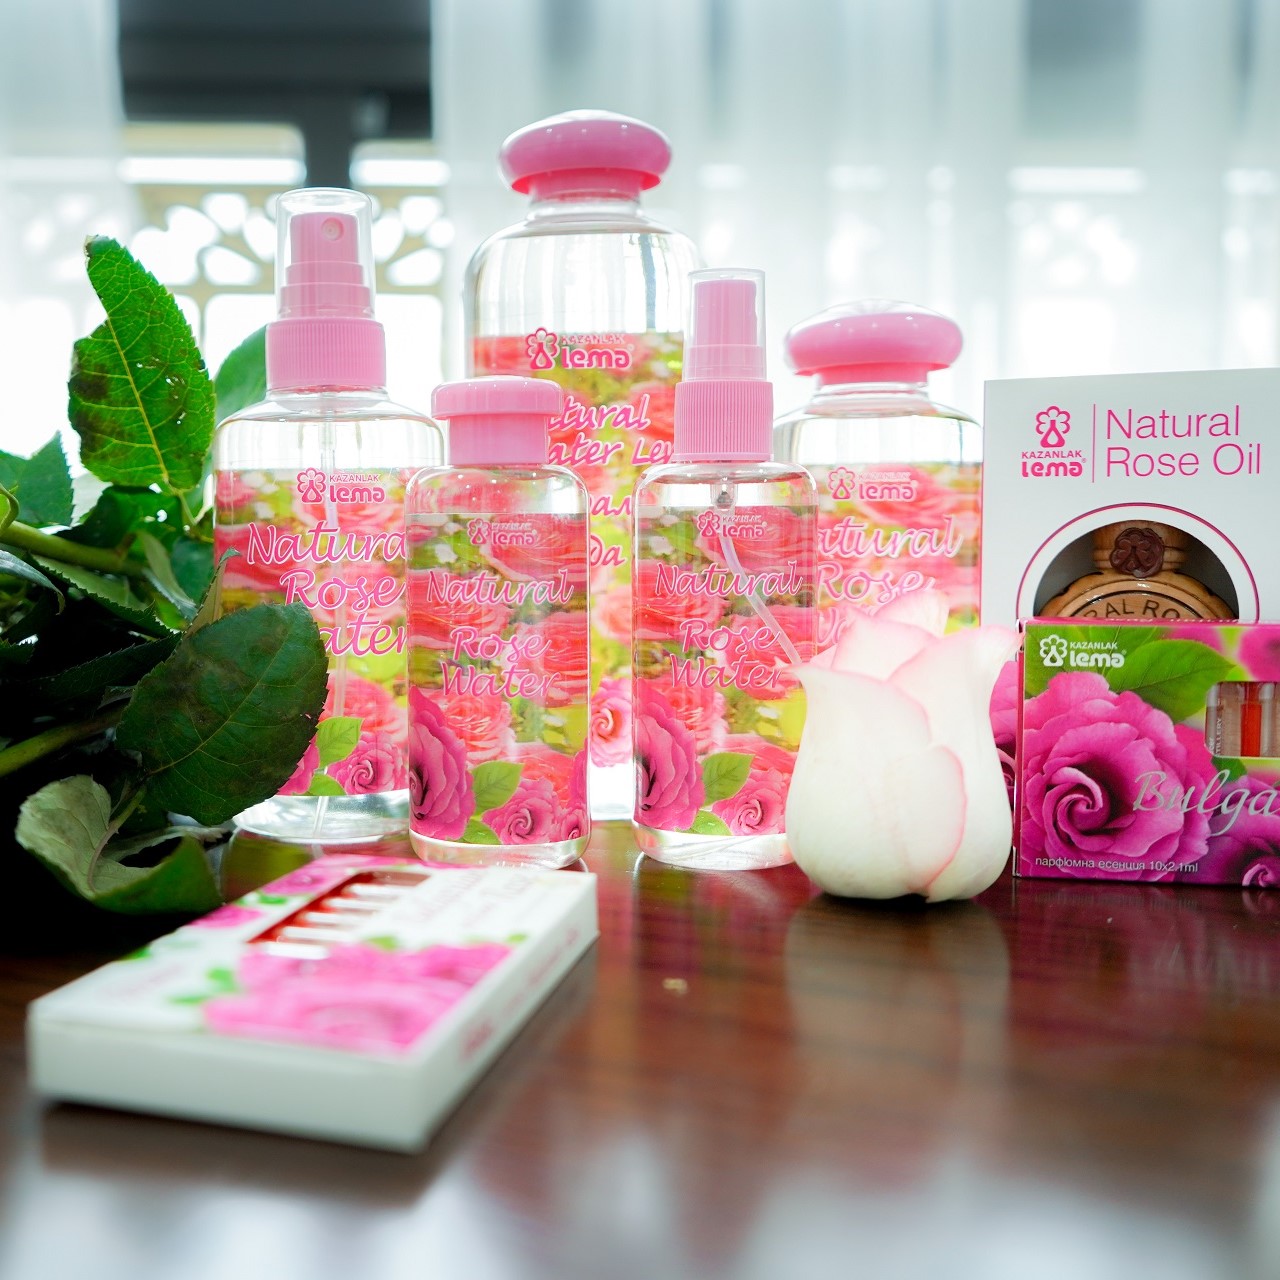 Nước hoa hồng Bulgaria thương hiệu Lema nguyên chất tự nhiên 100ml dạng xịt, nước hoa hồng nhập khẩu chính hãng